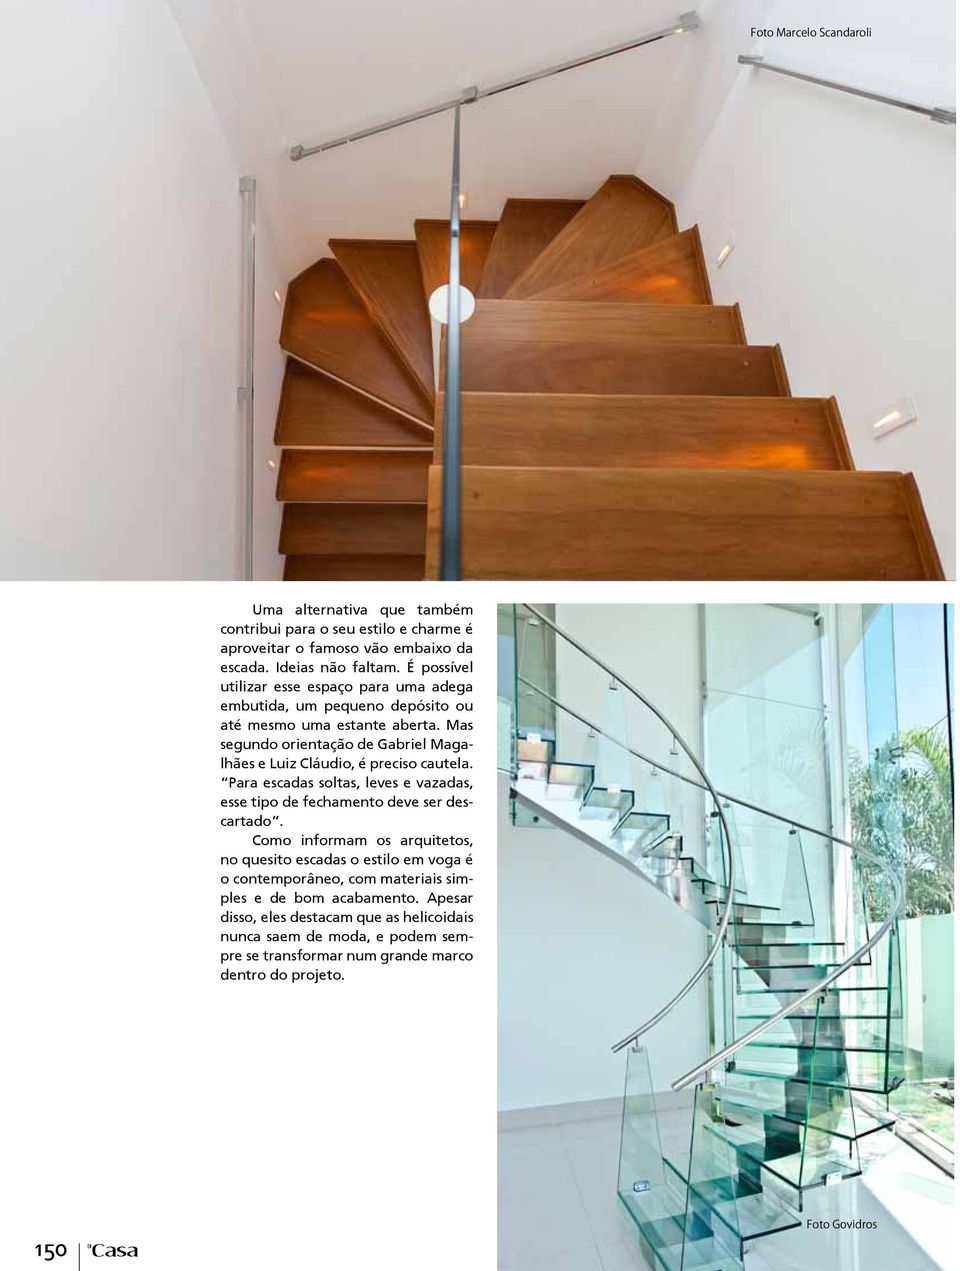 Mas segundo orientação de Gabriel Magalhães e Luiz Cláudio, é preciso cautela. Para escadas soltas, leves e vazadas, esse tipo de fechamento deve ser descartado.